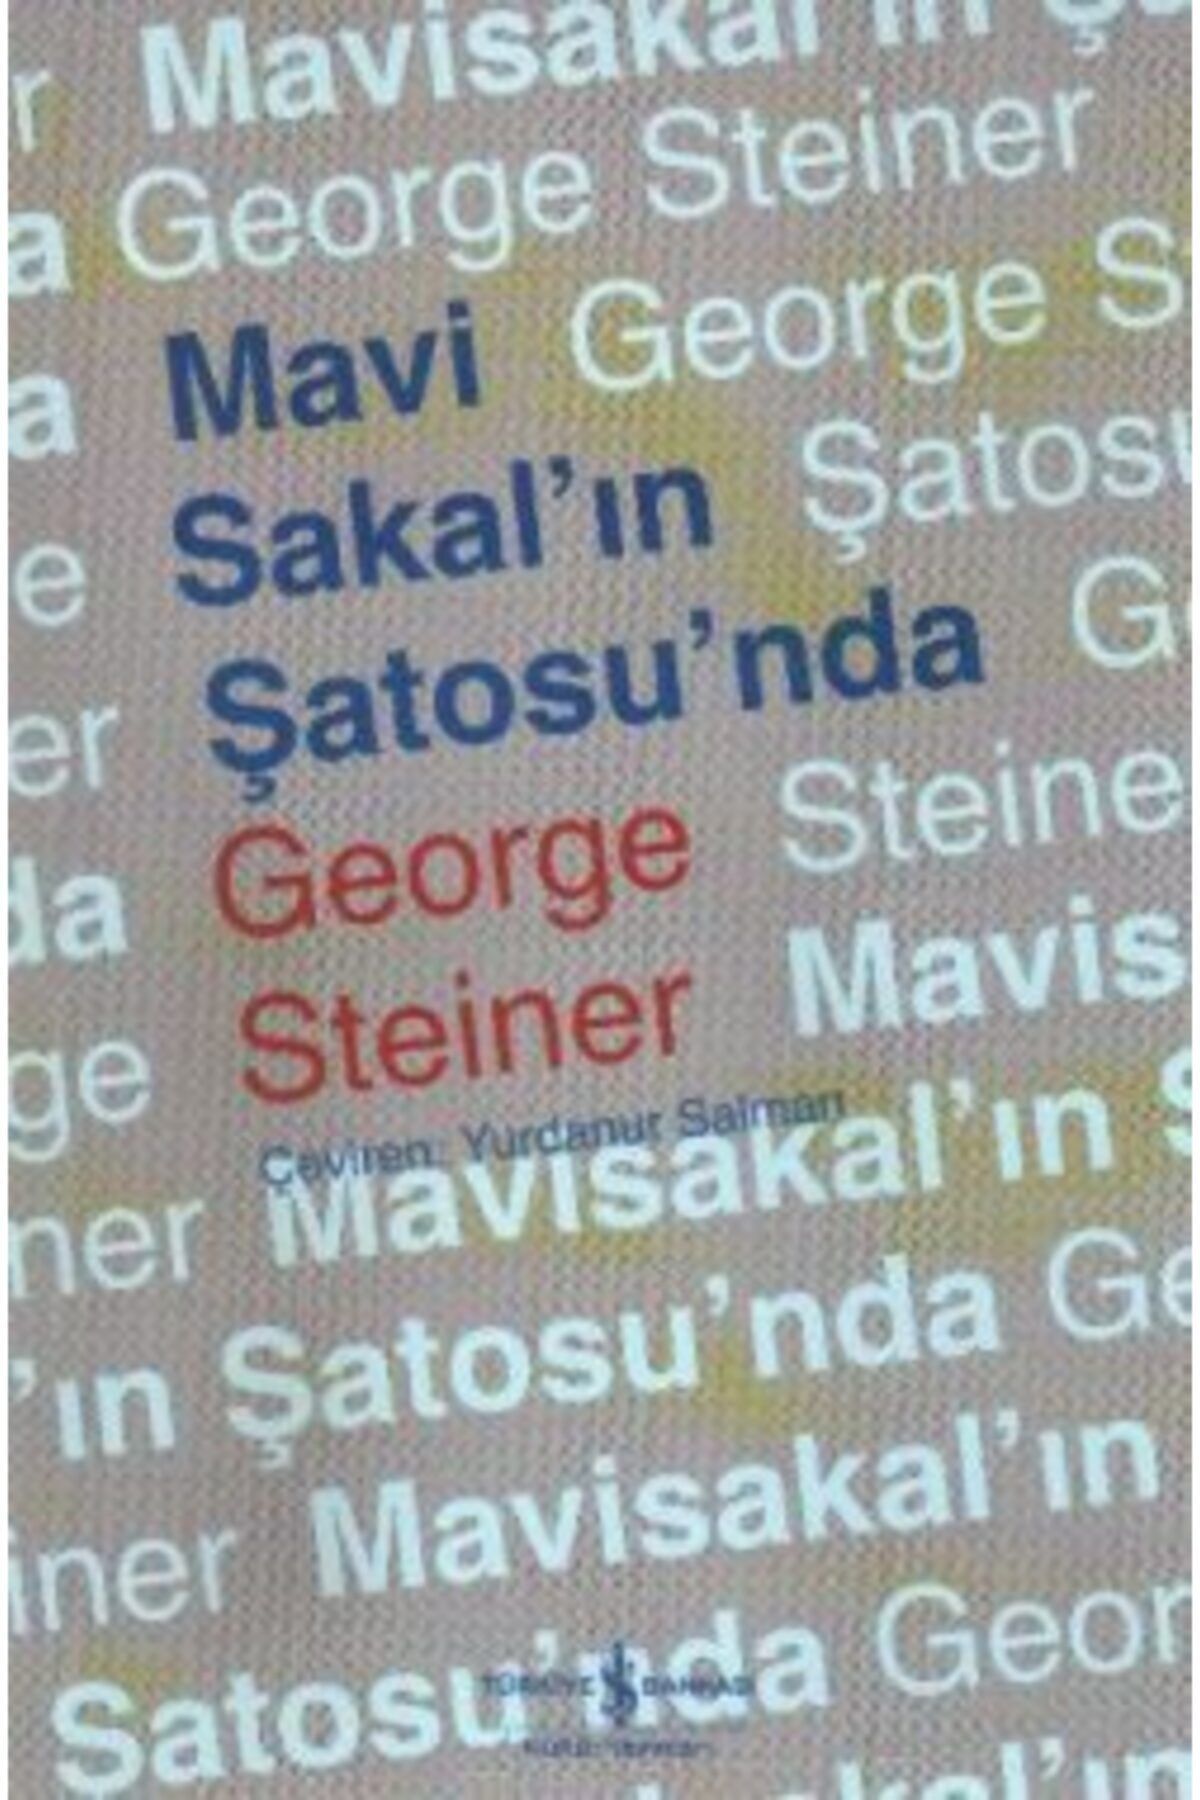 Türkiye İş Bankası Kültür Yayınları Mavi Sakal’ın Şatosu’nda kitabı - George Steiner - İş Bankası Kültür Yayınları